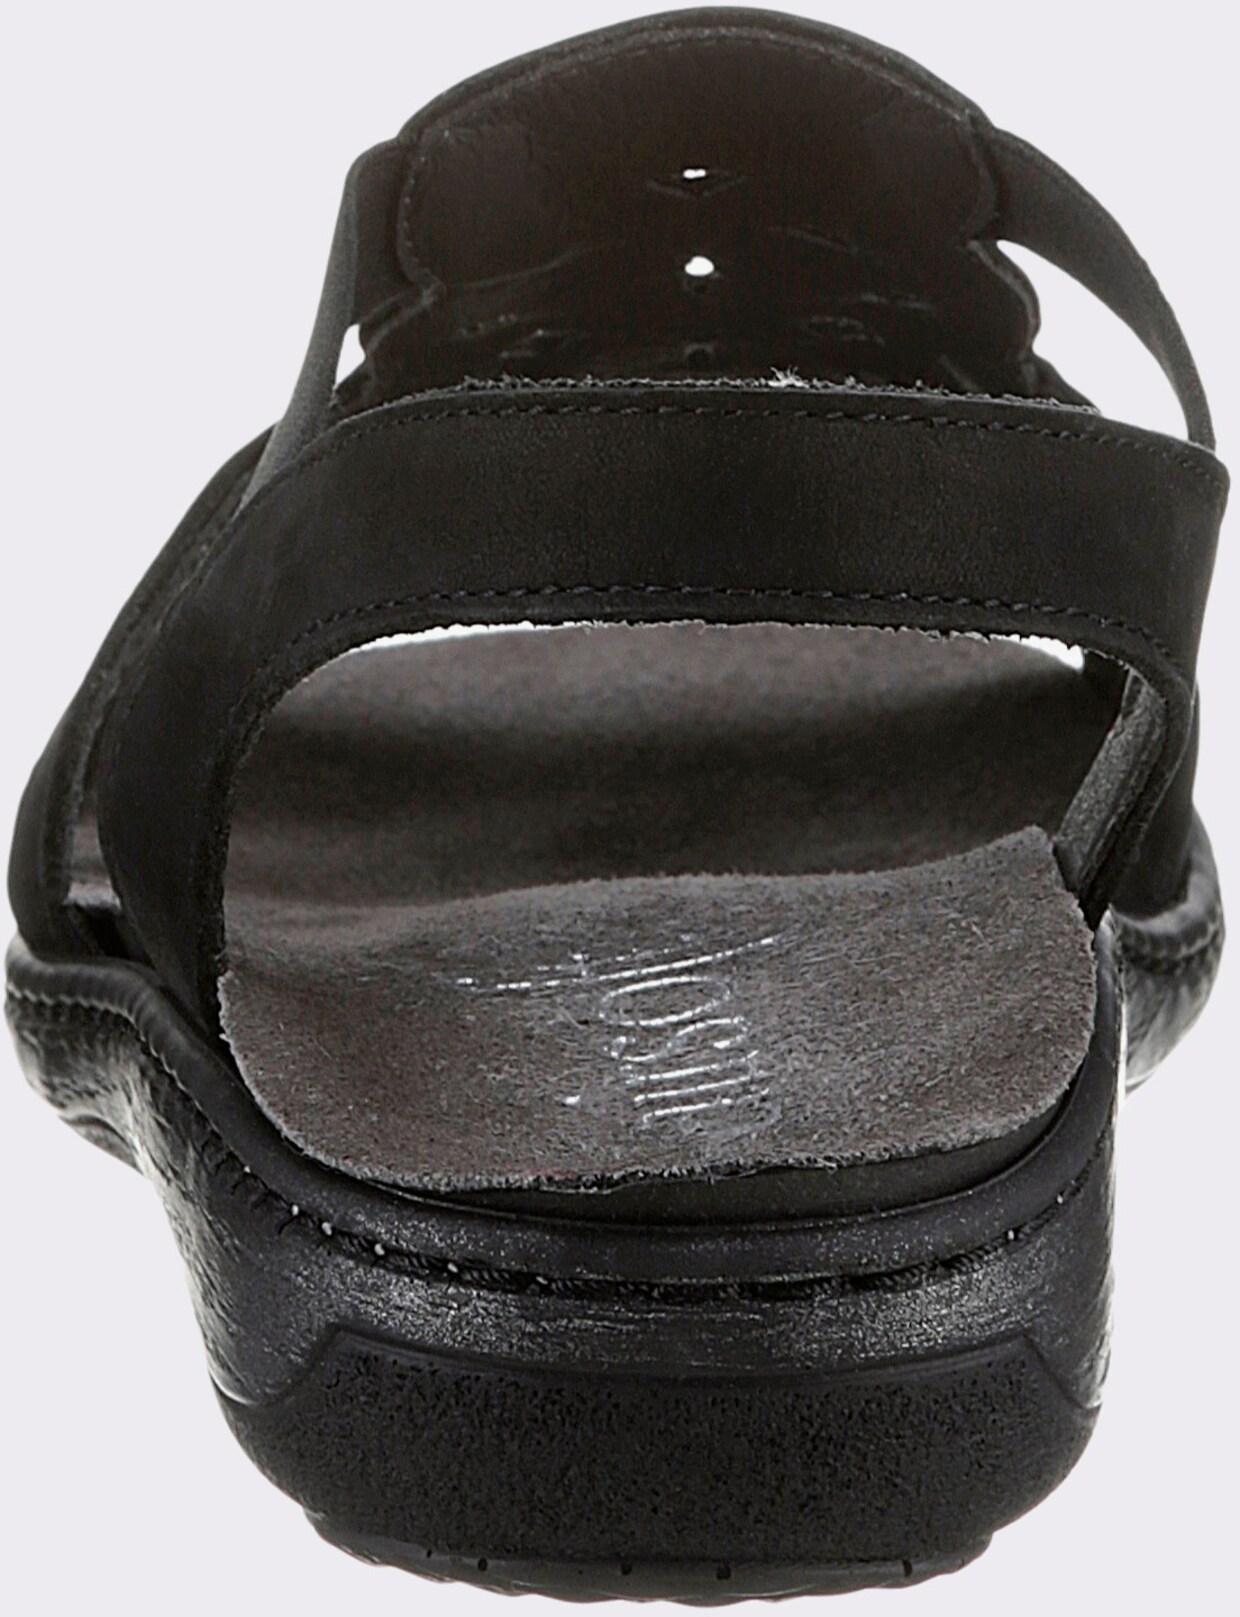 airsoft comfort+ Sandale - schwarz